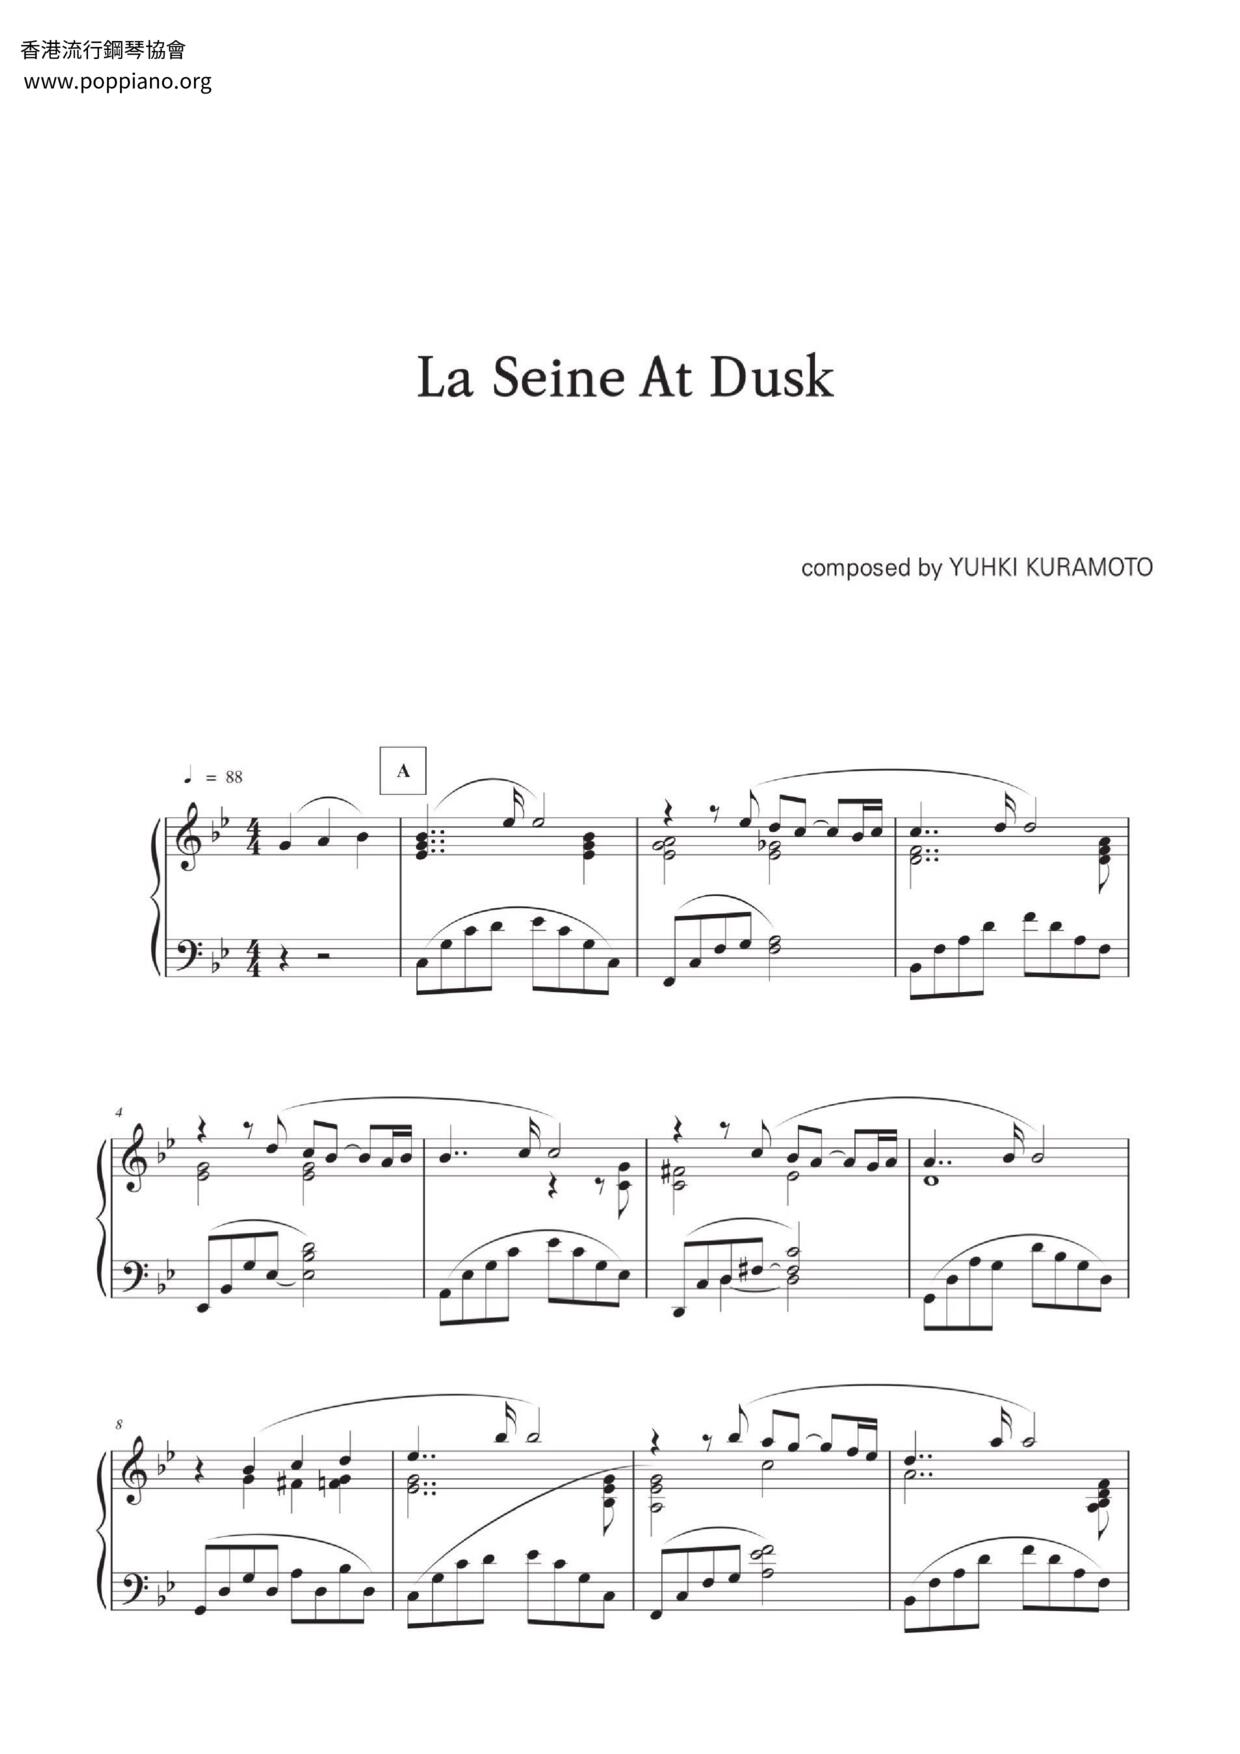 La Seine At Dusk Score